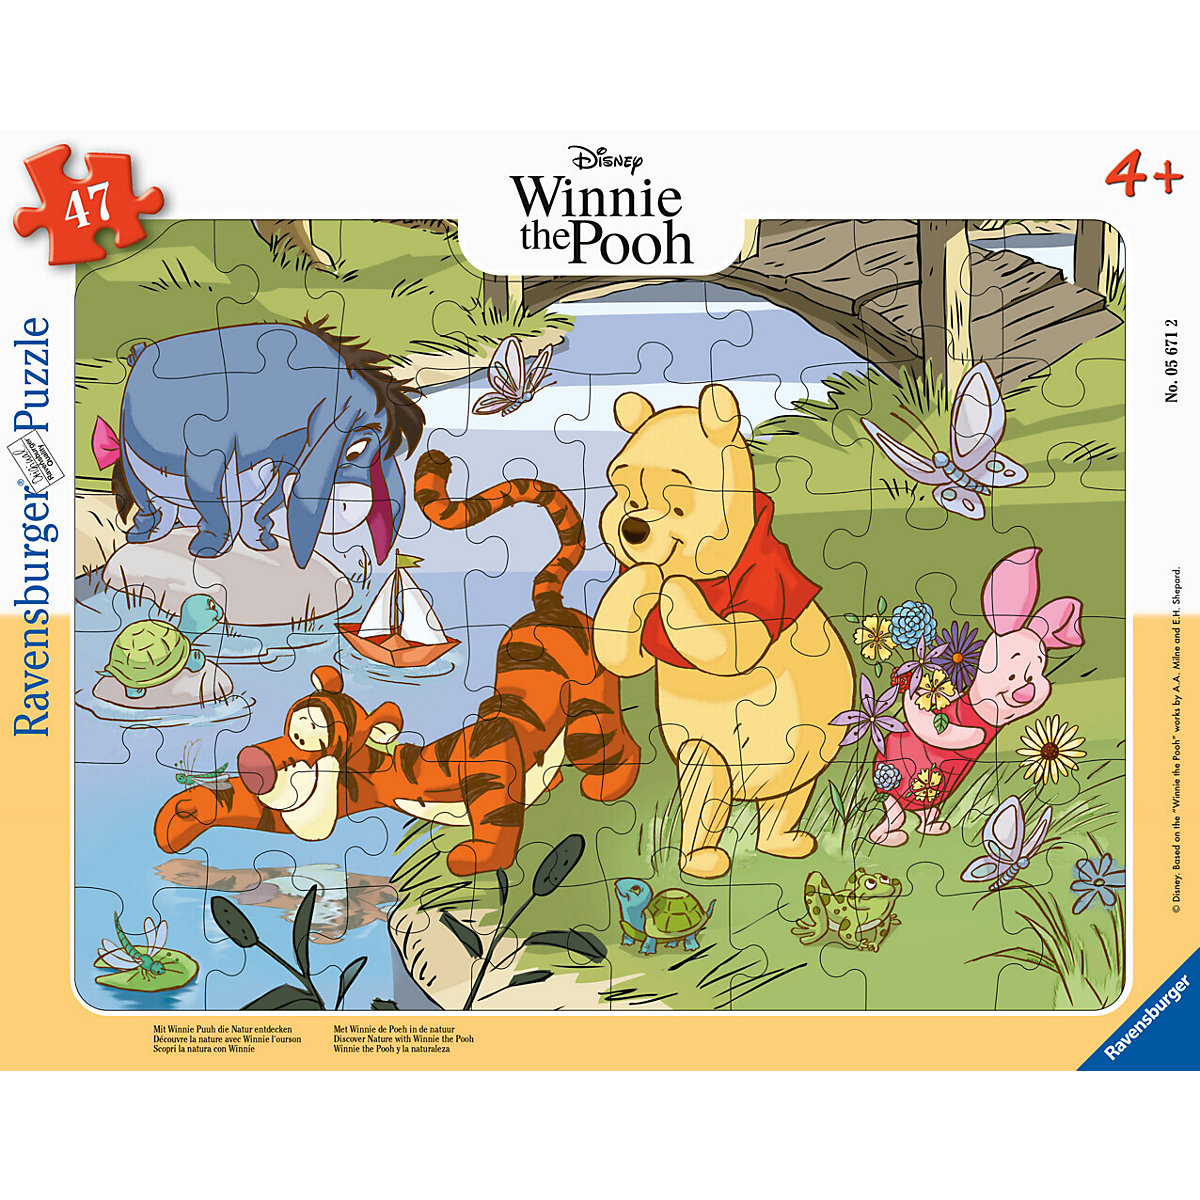 Ravensburger Kinderpuzzle 05671 Mit Winnie Puuh die Natur entdecken 47 Teile Teile Disney Rahmenpuzzle für Kinder ab 4 Jahren